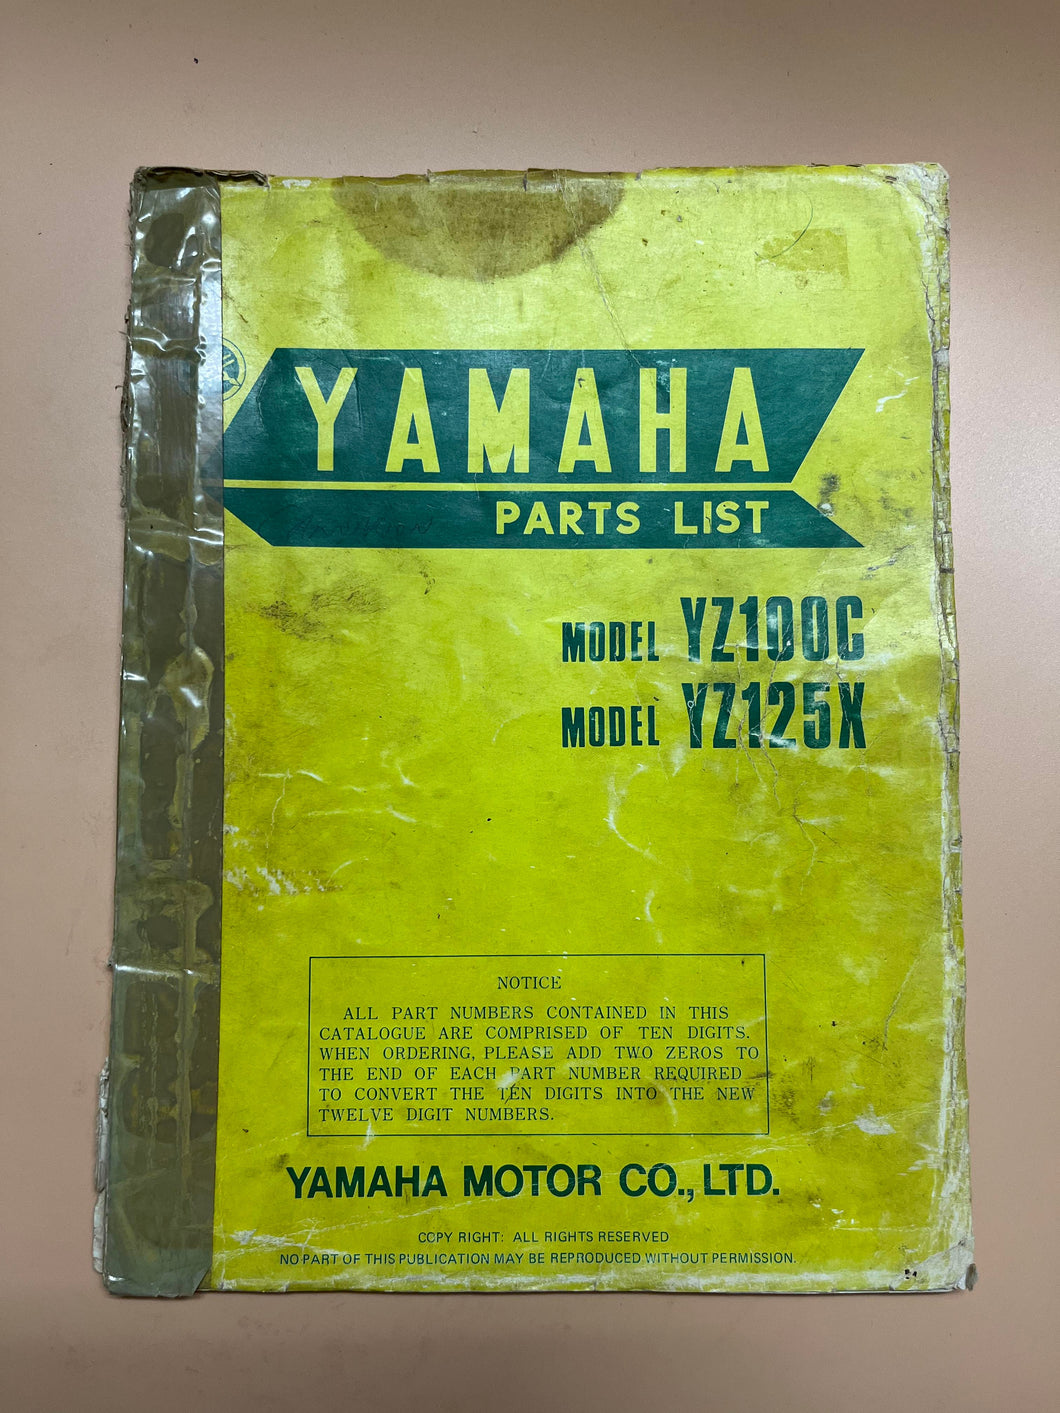 Yamaha Parts List - Models YZ100C & YZ125X